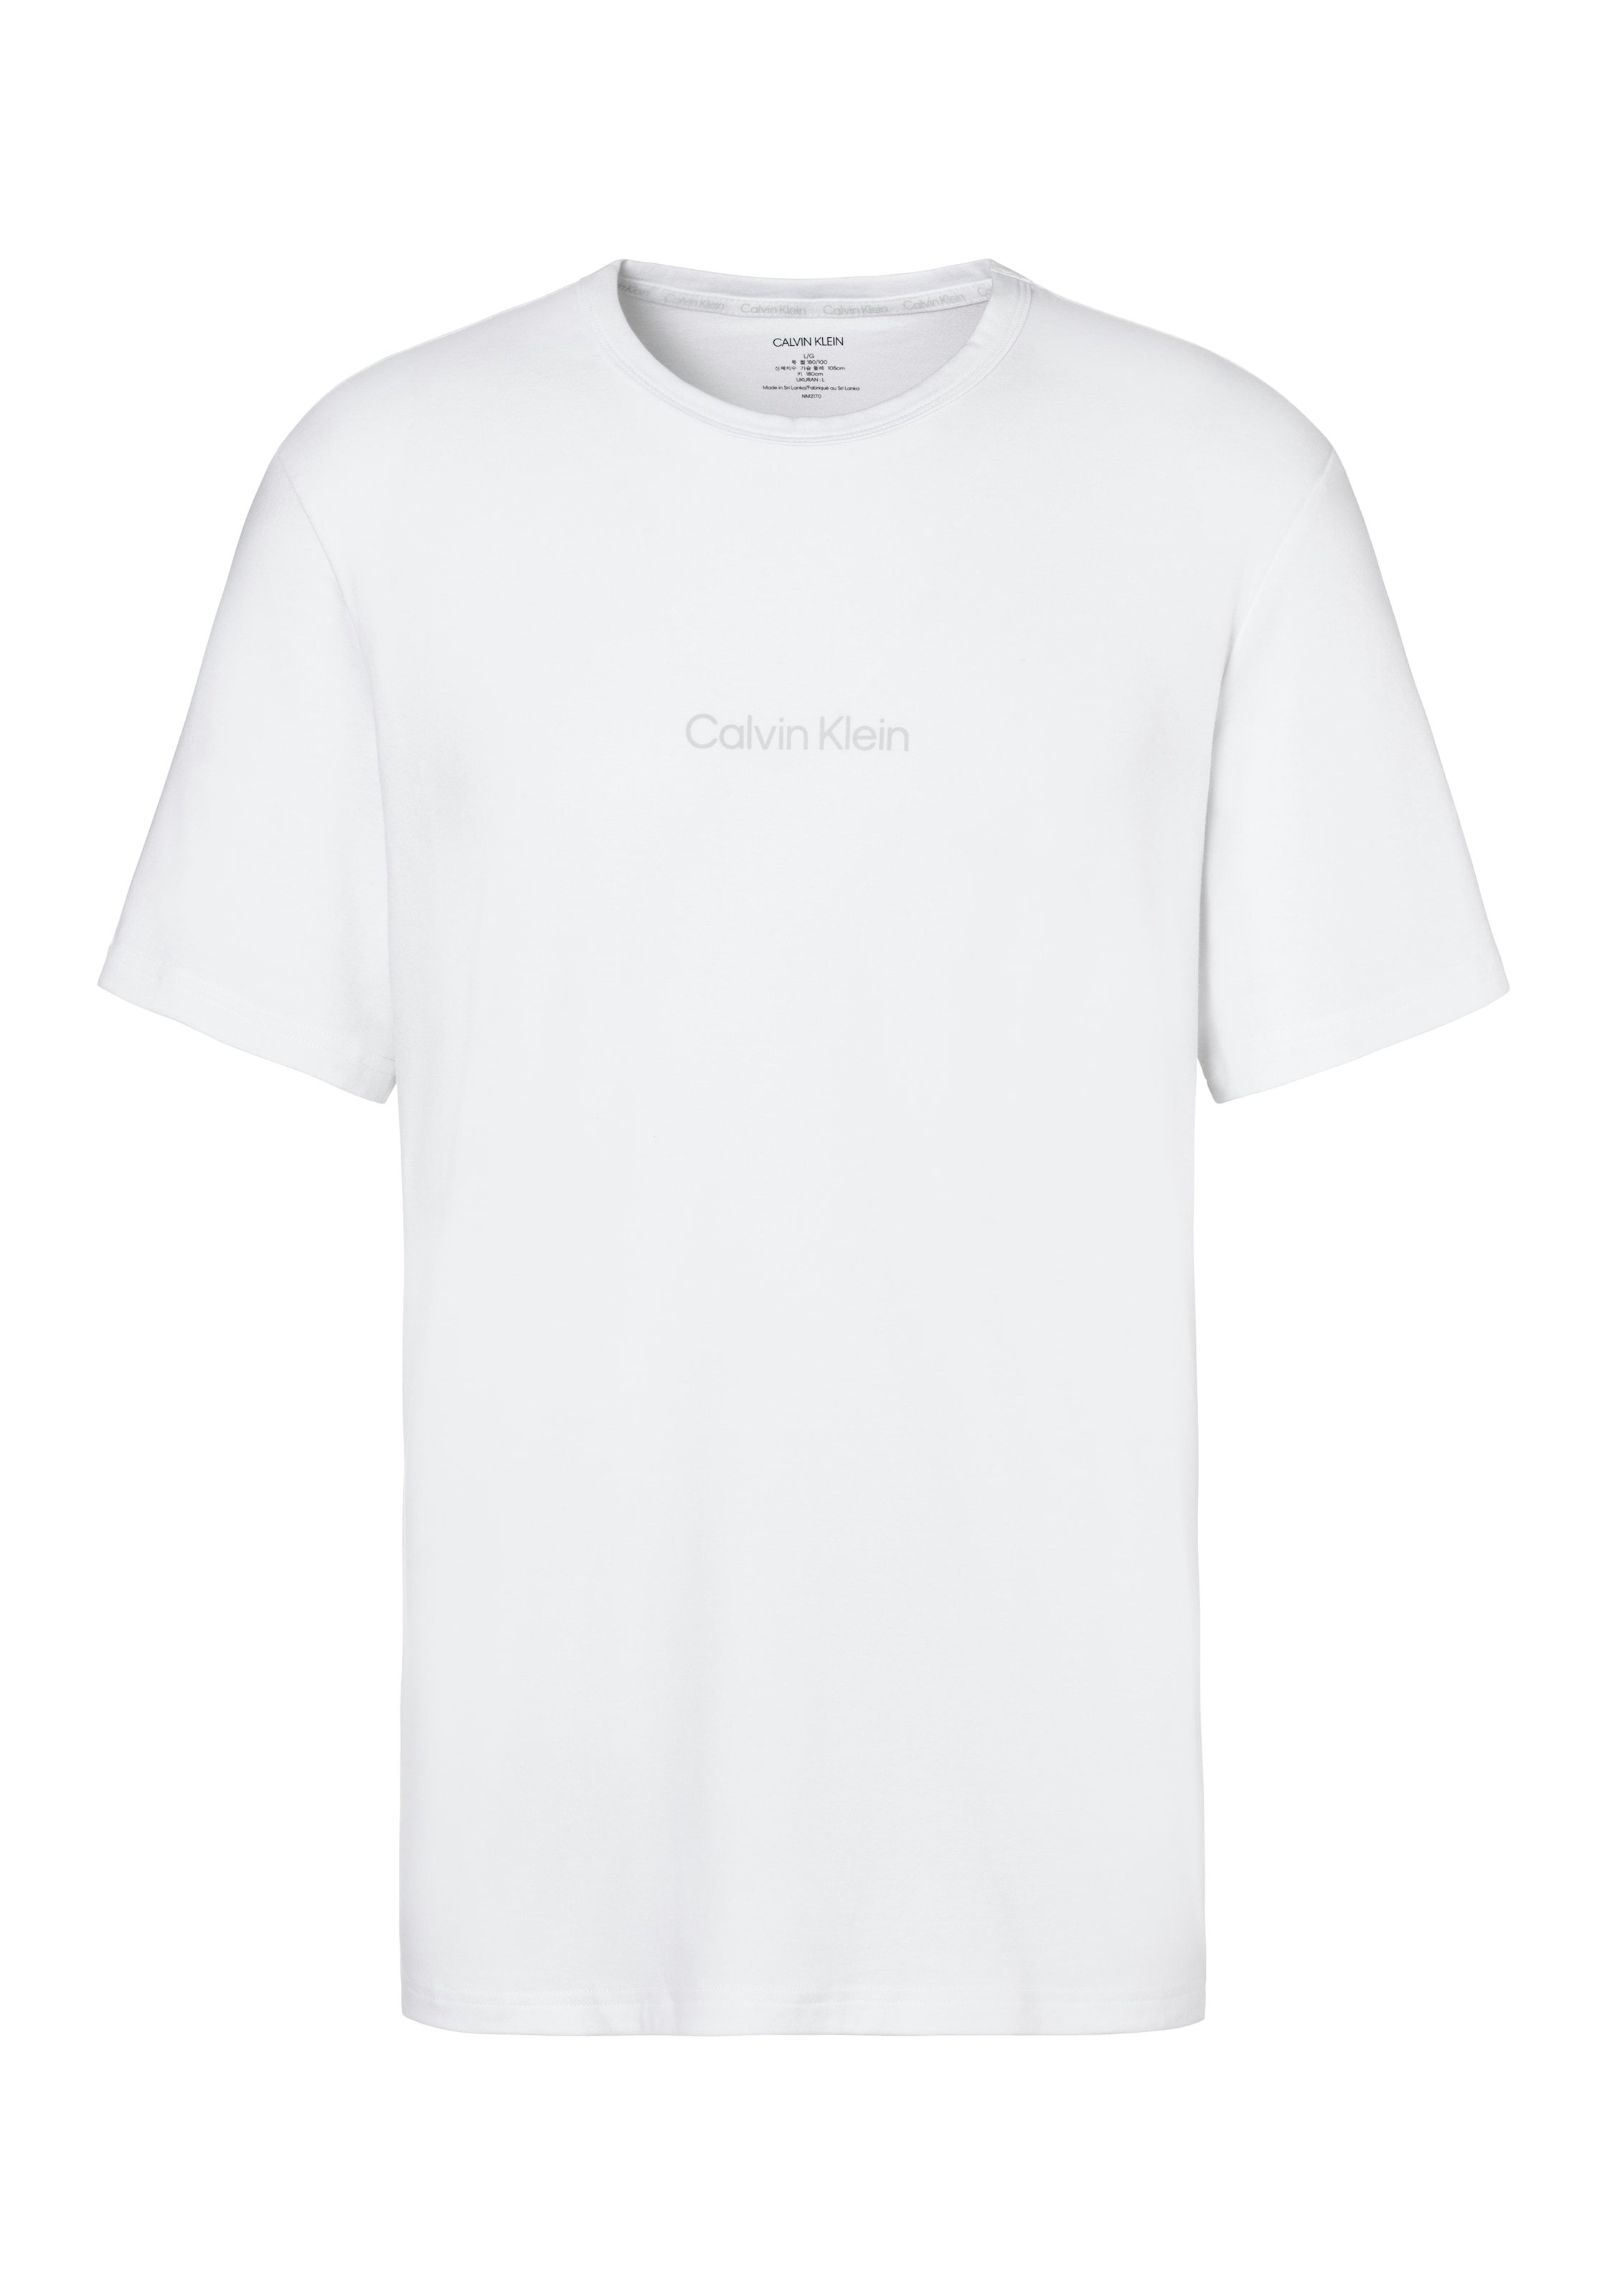 T-Shirt, Druck Calvin shoppen Logo mit Klein online OTTO bei